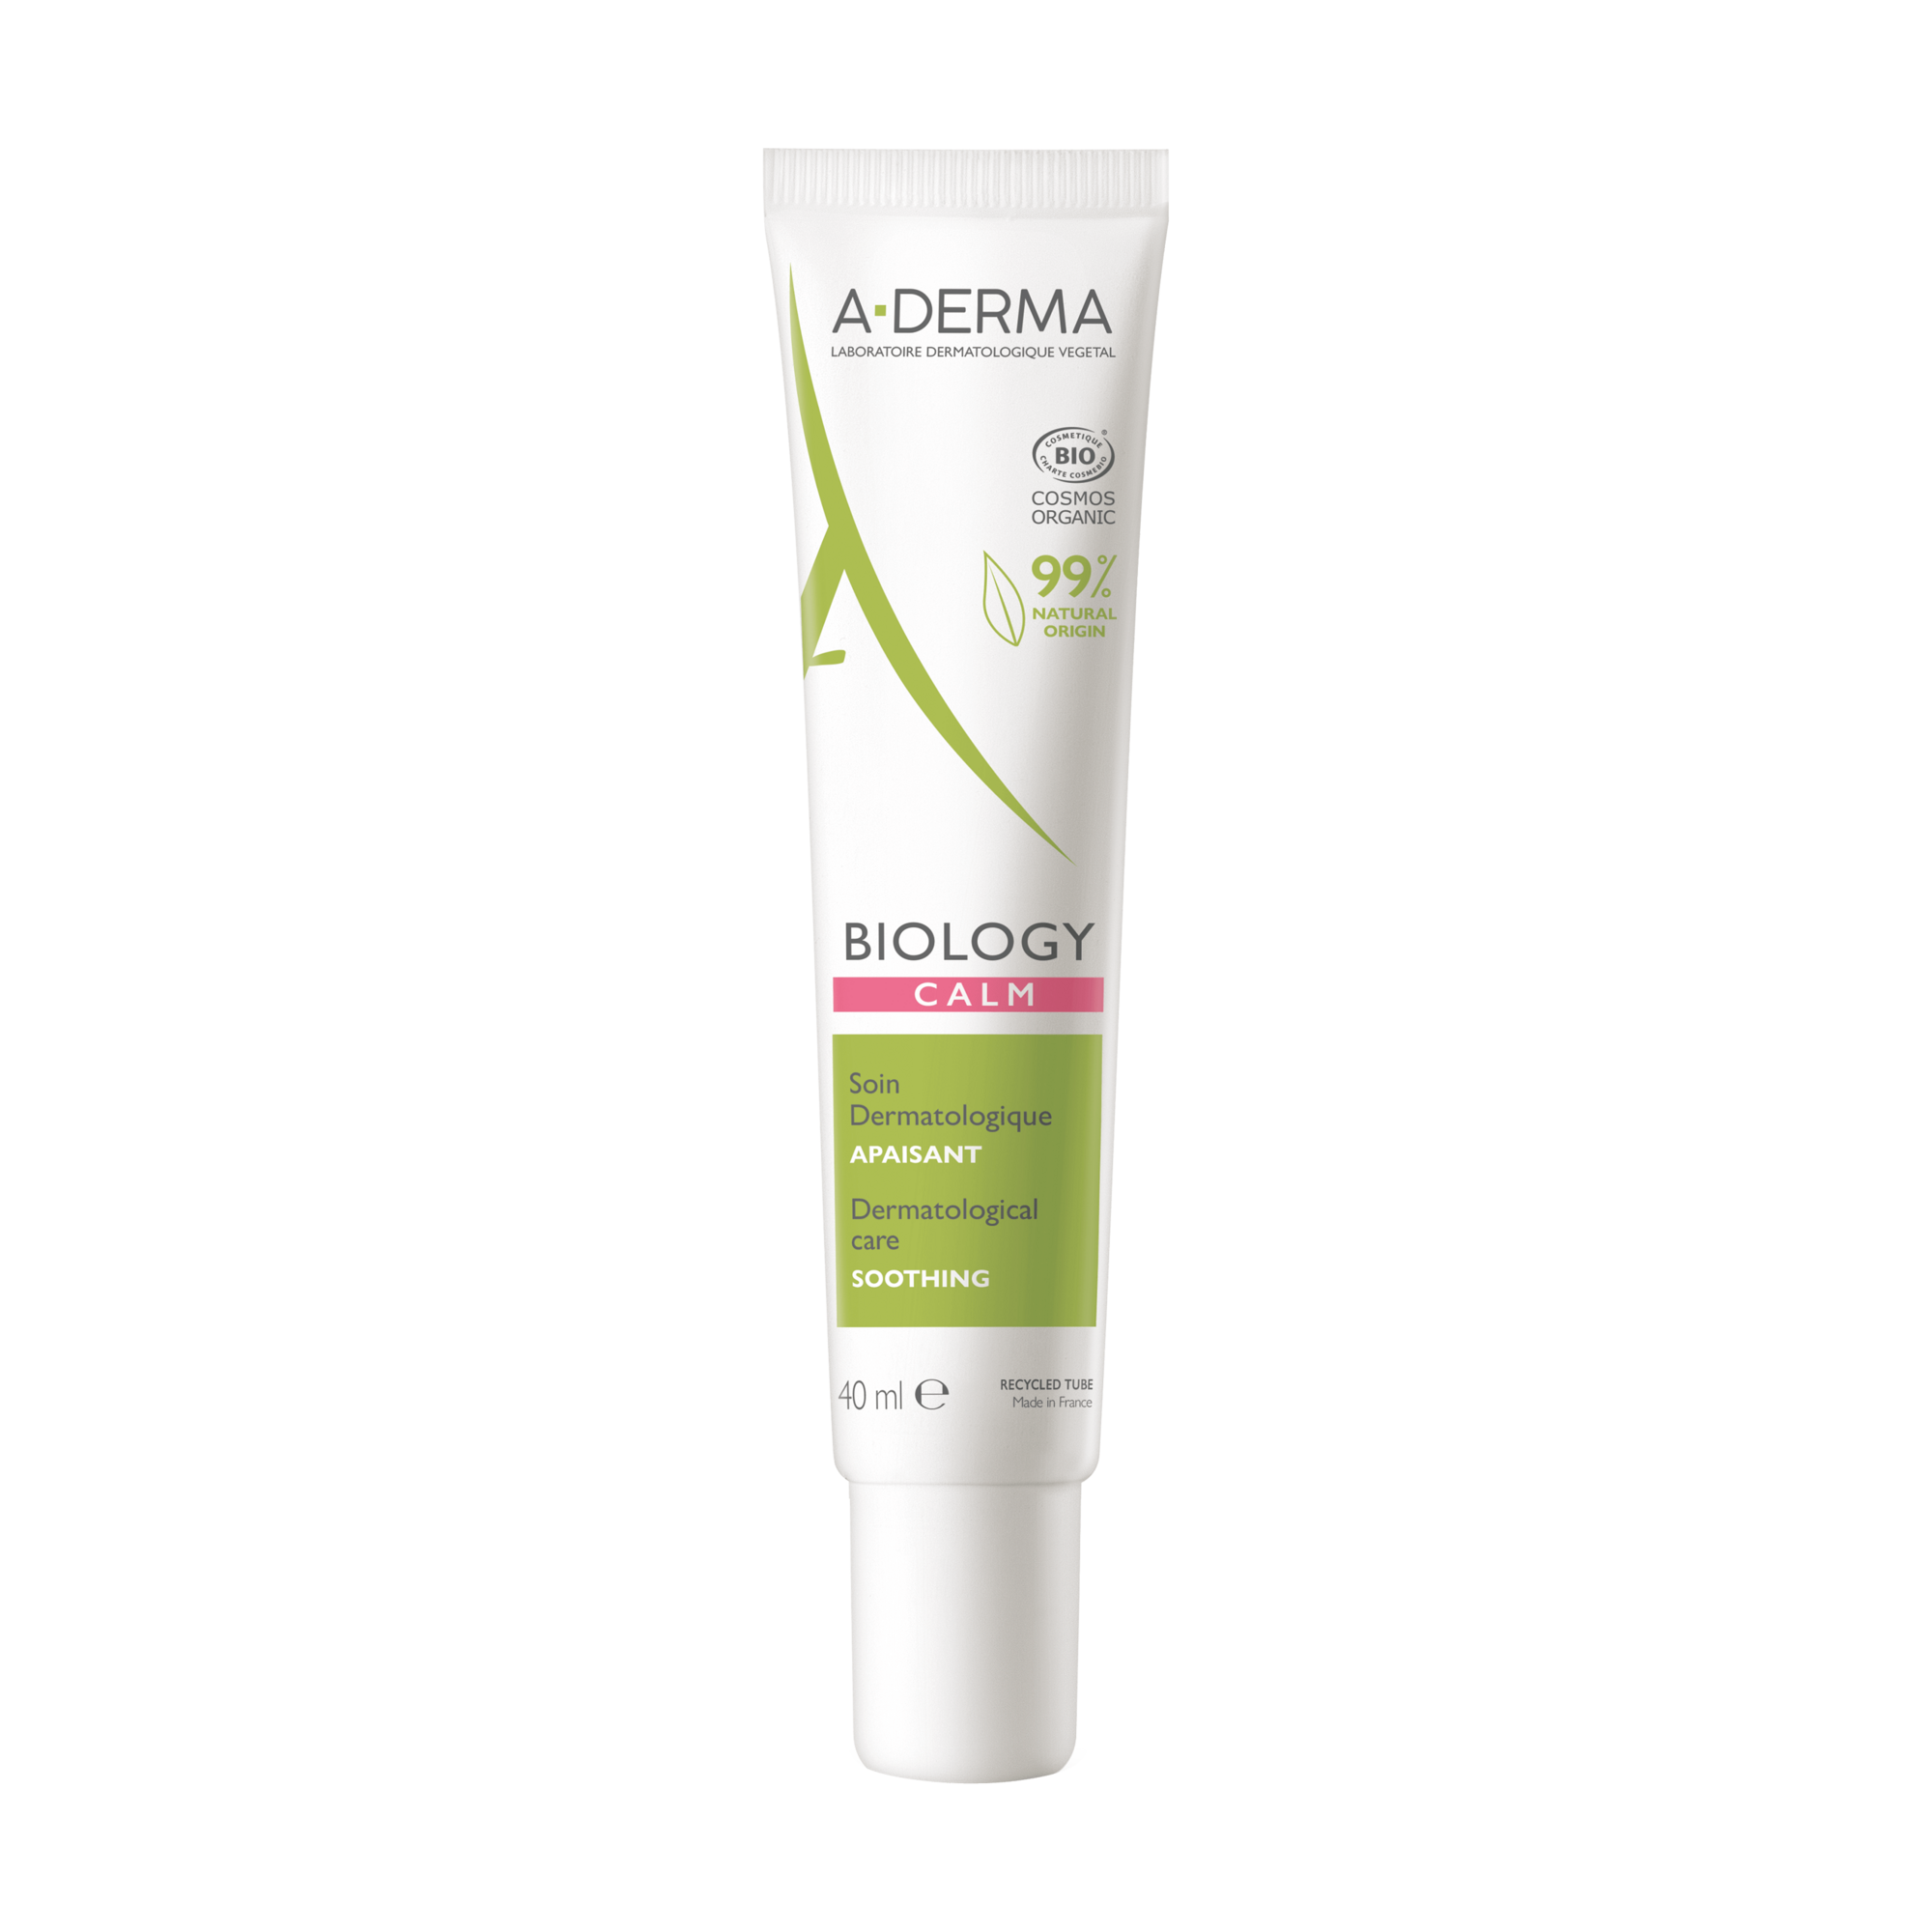 A-Derma Biology Calm Cream, 40 ml